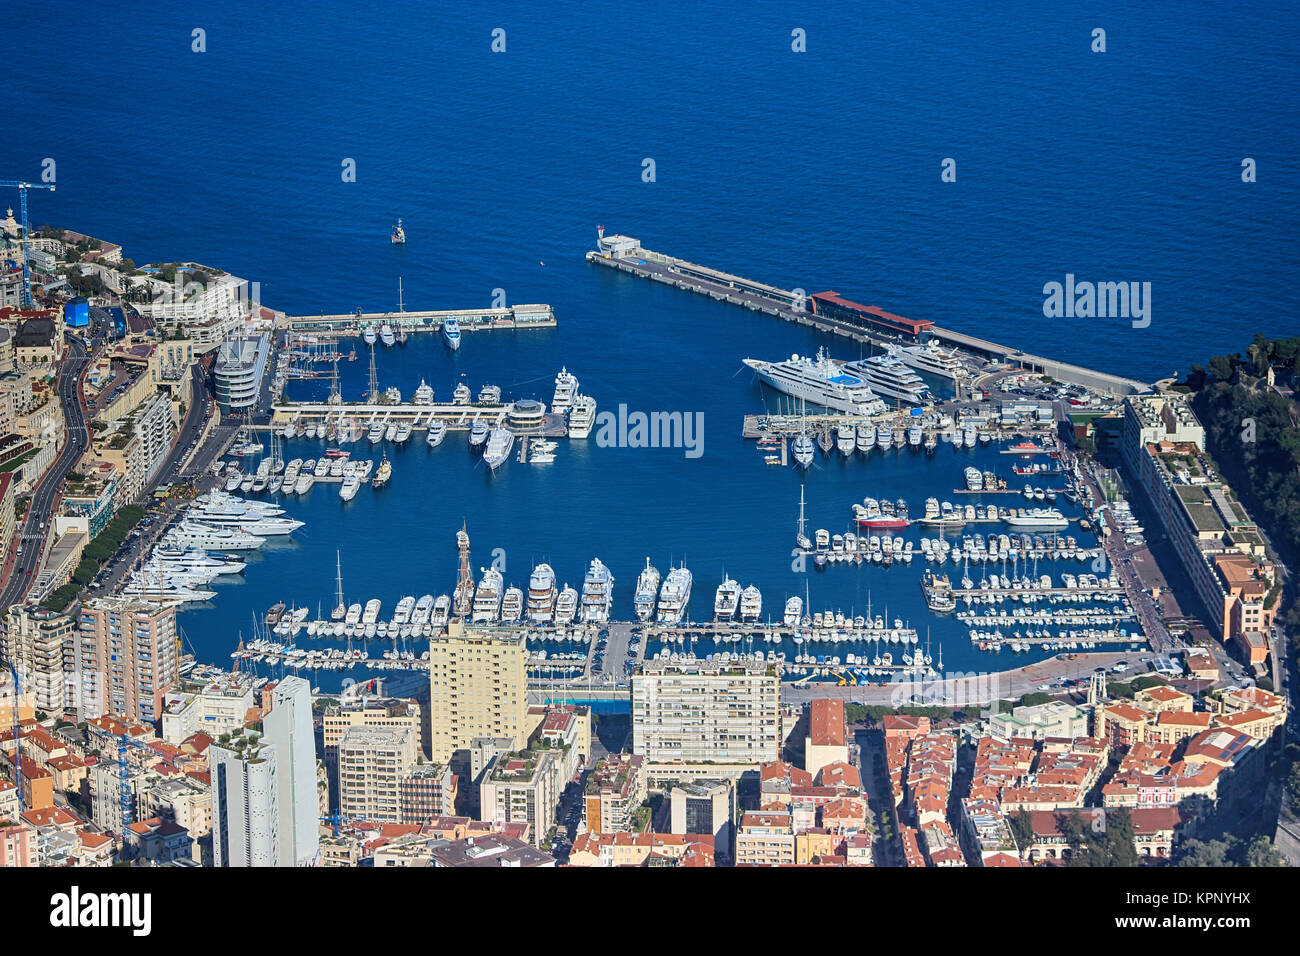 Vue aérienne du port Hercule à Monaco Banque D'Images